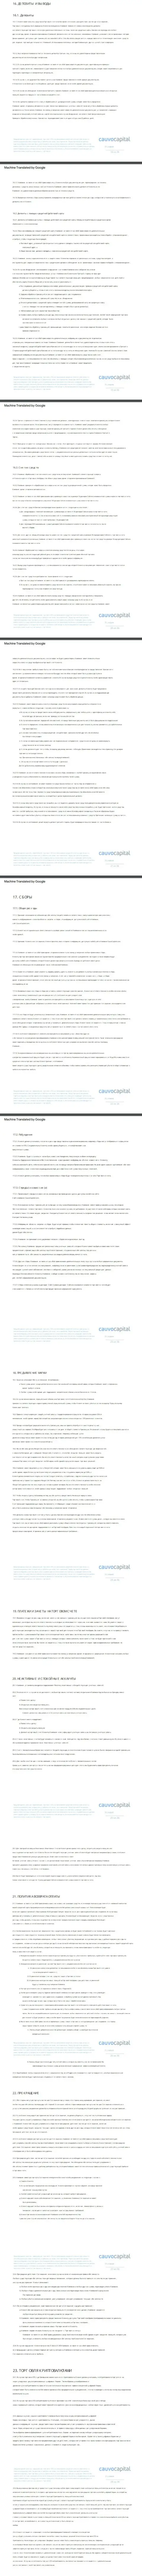 3 часть пользовательского соглашения форекс-организации Cauvo Capital